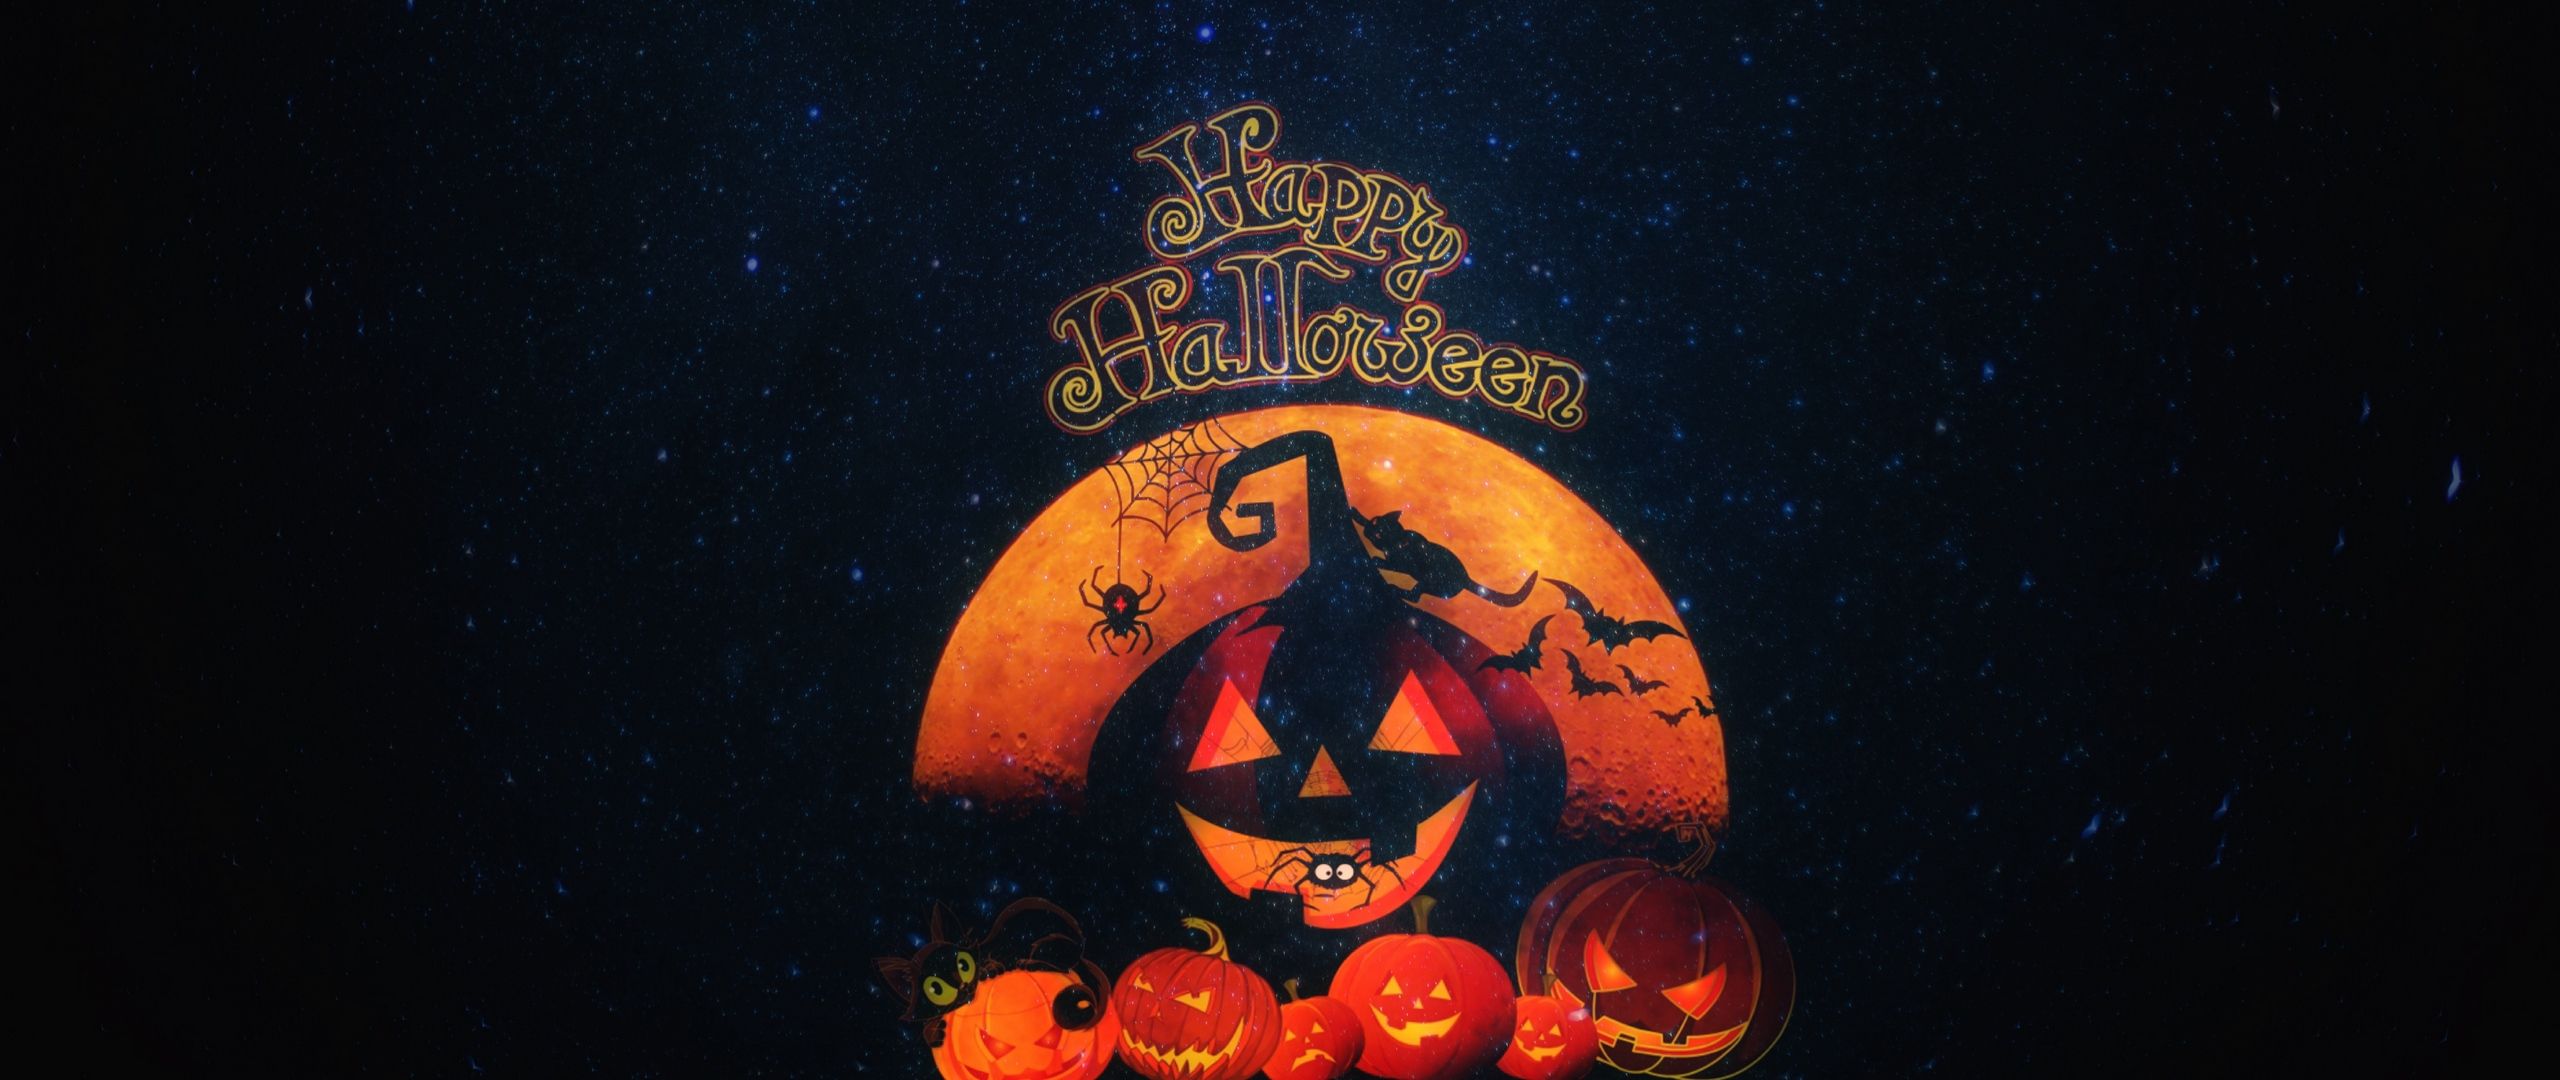 Free download Download wallpaper 2560x1080 halloween pumpkin autumn cat [ 2560x1080] for your Desktop, Mobile & Tablet. Explore Halloween Pumpkin 1080p Wallpaper. Halloween Pumpkin 1080p Wallpaper, Halloween Pumpkin Background, Halloween